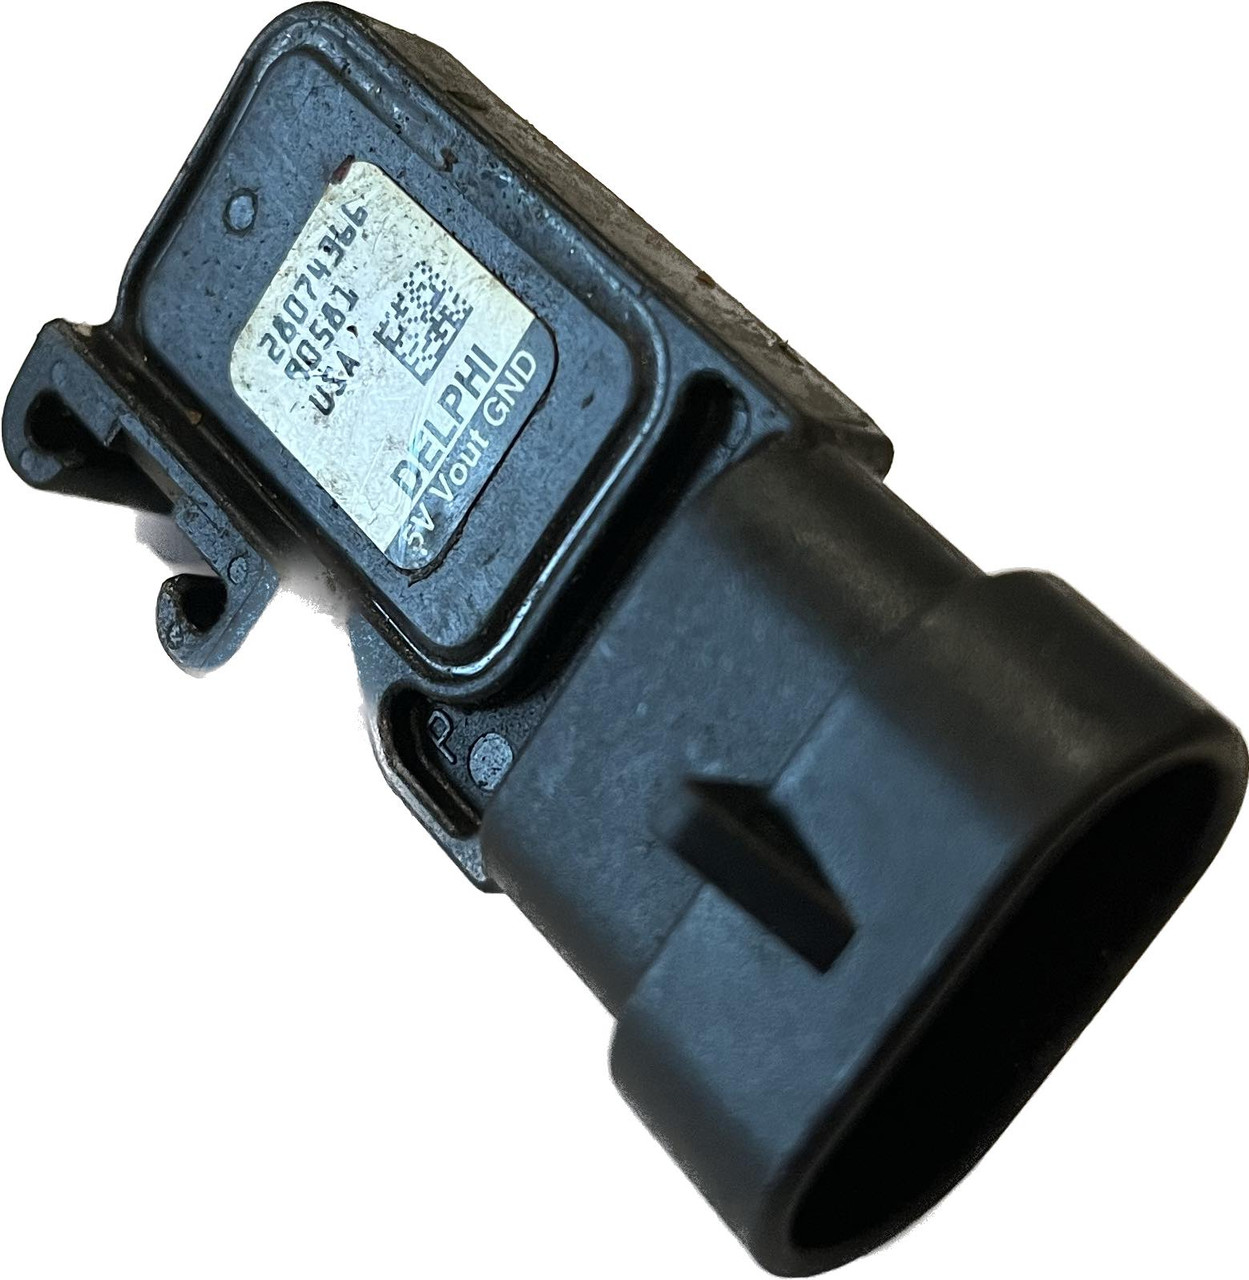 USED 28074366 Delphi Mercury Map Sensor 854445 30-115hp 1.5